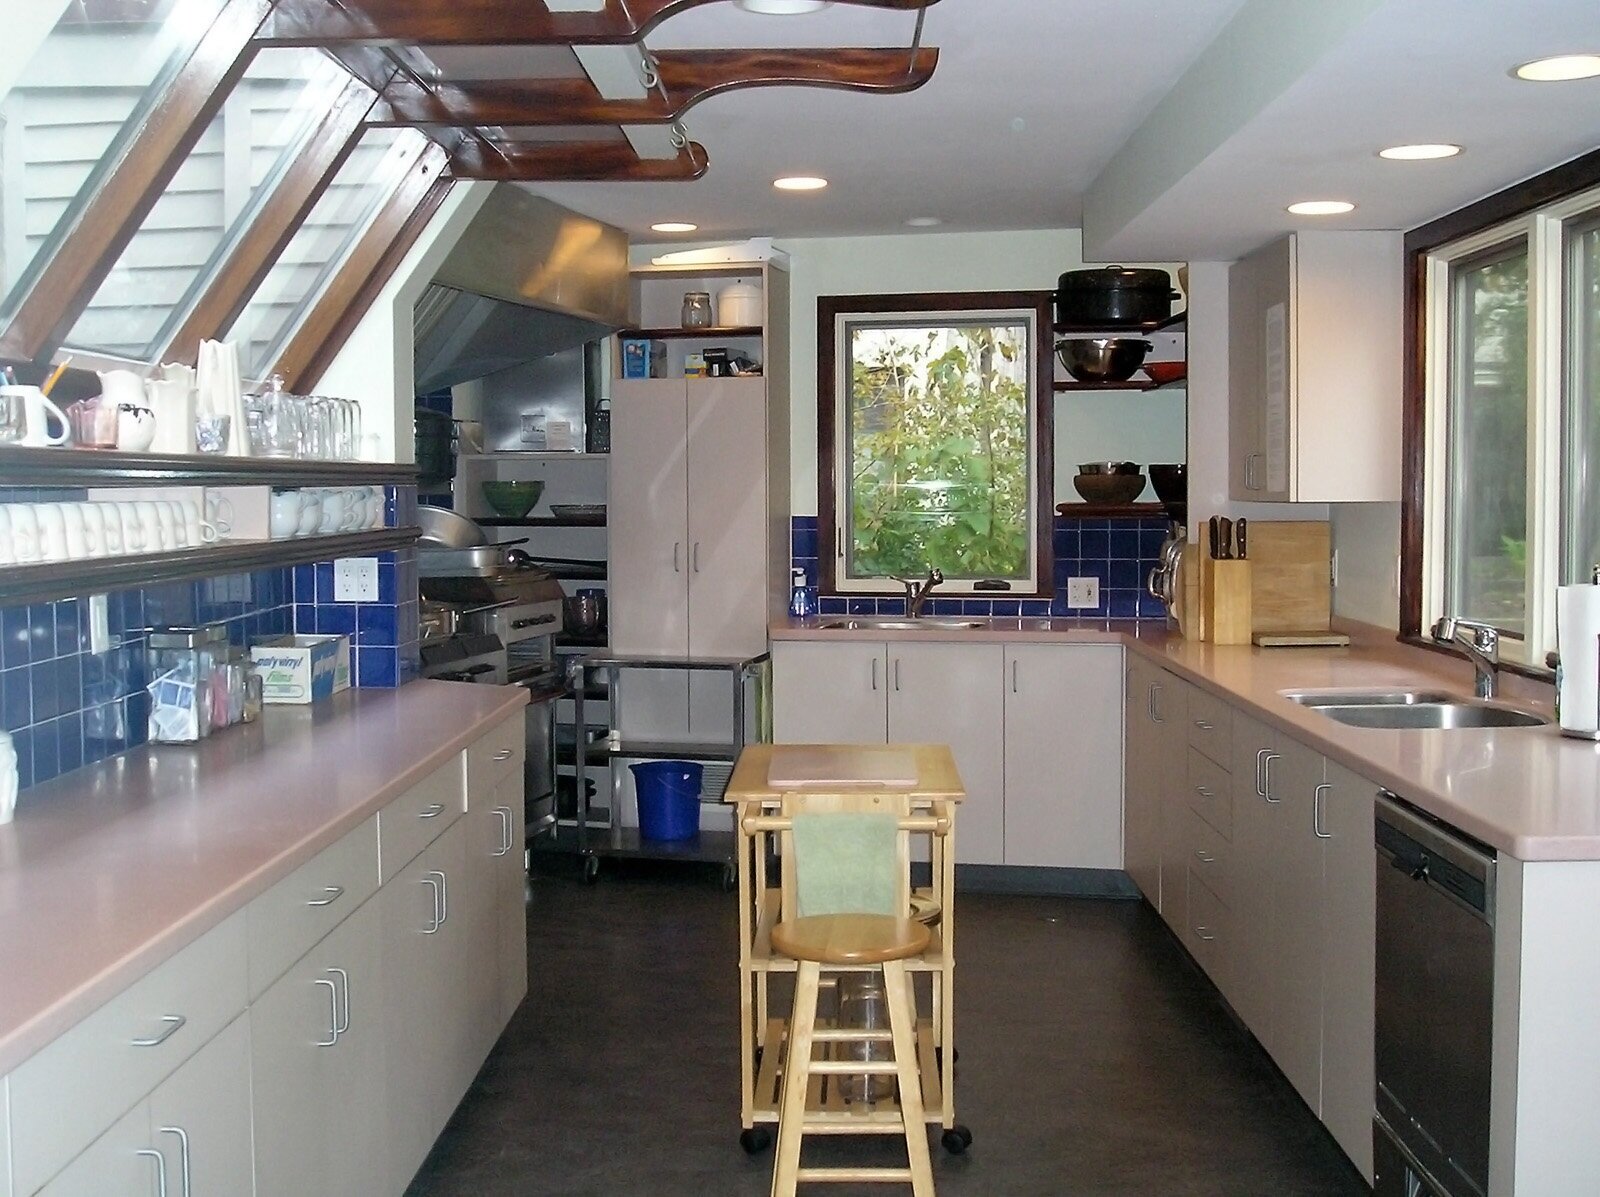 Kitchen3.jpg